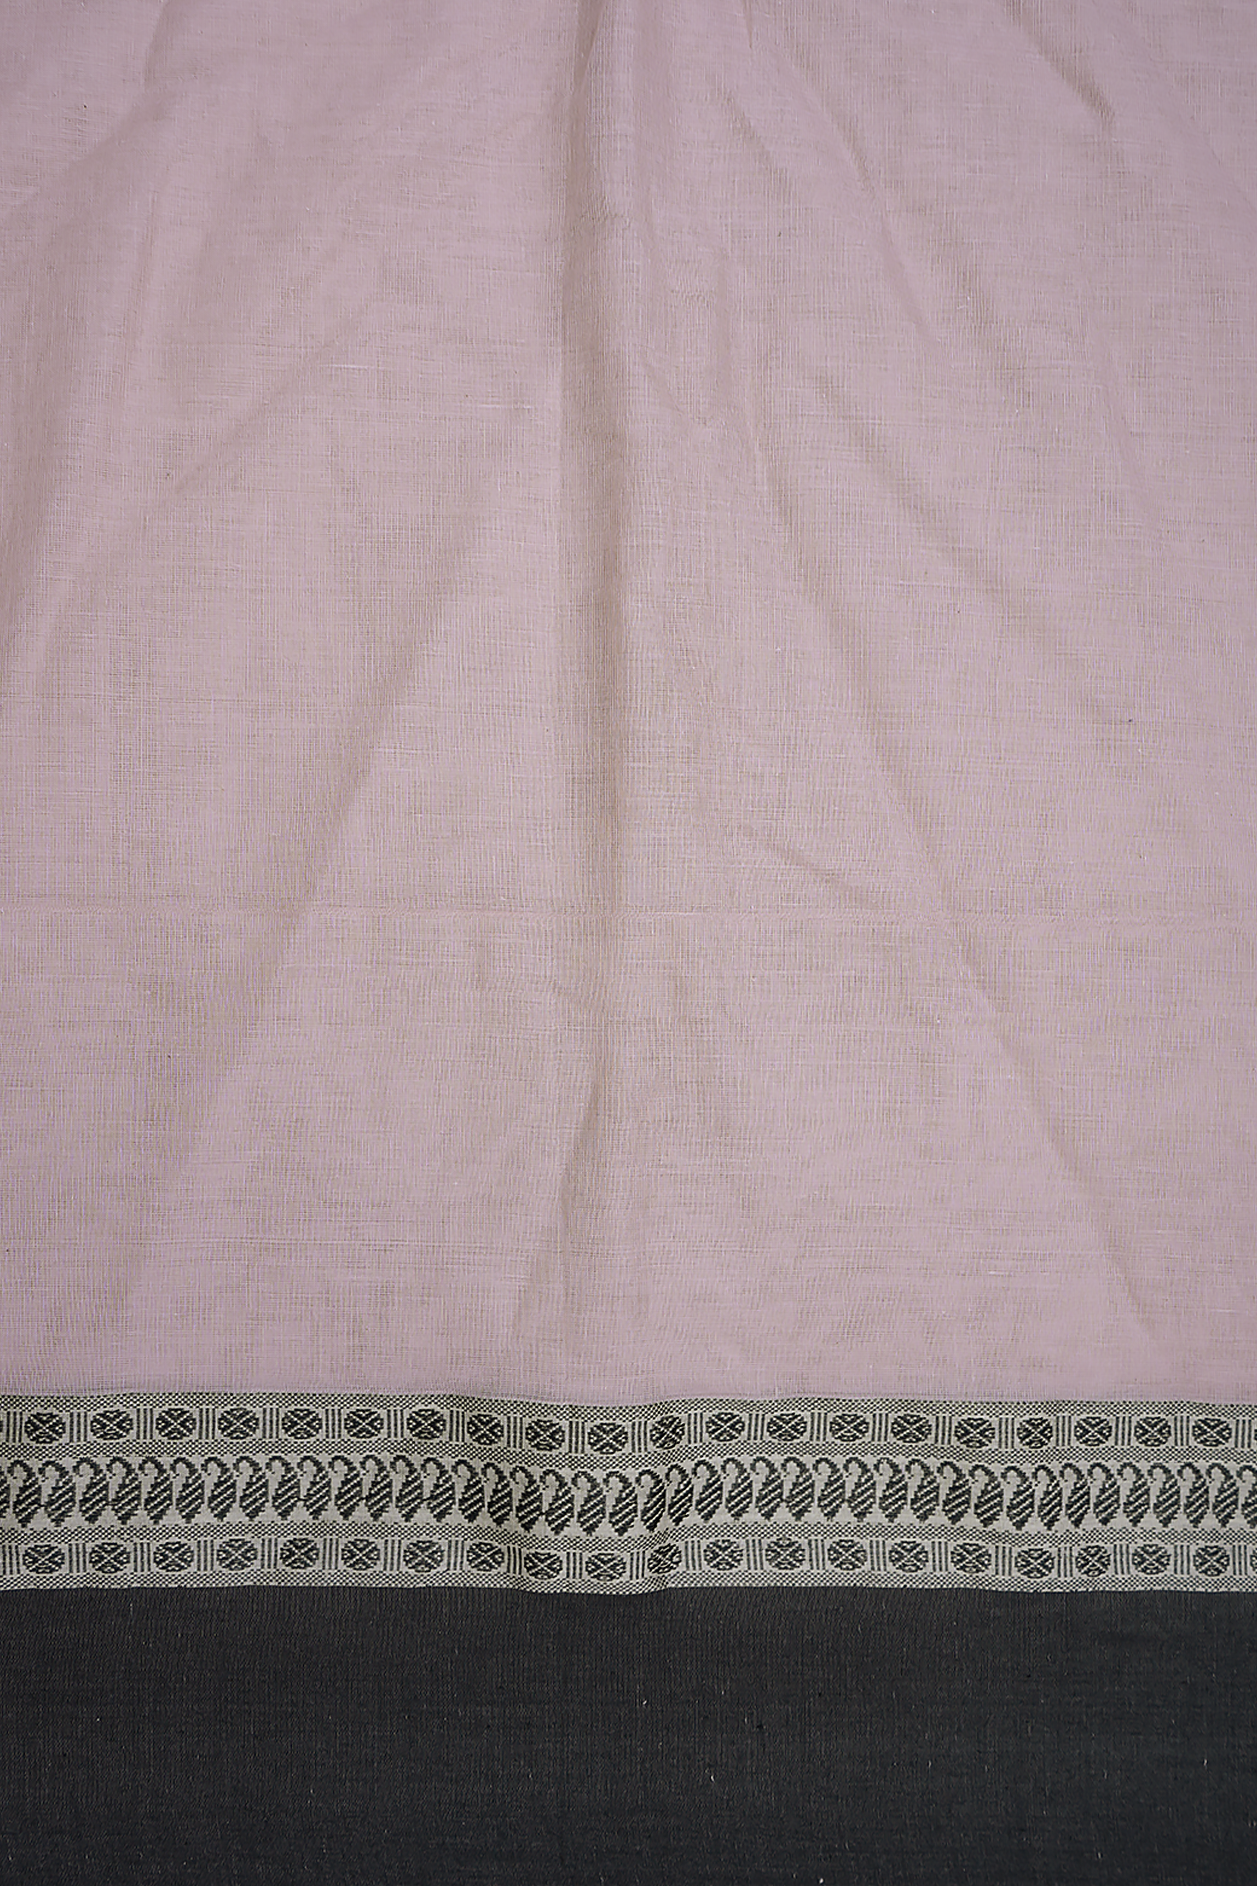 Contrast Border Powder Pink Bengal Cotton Saree